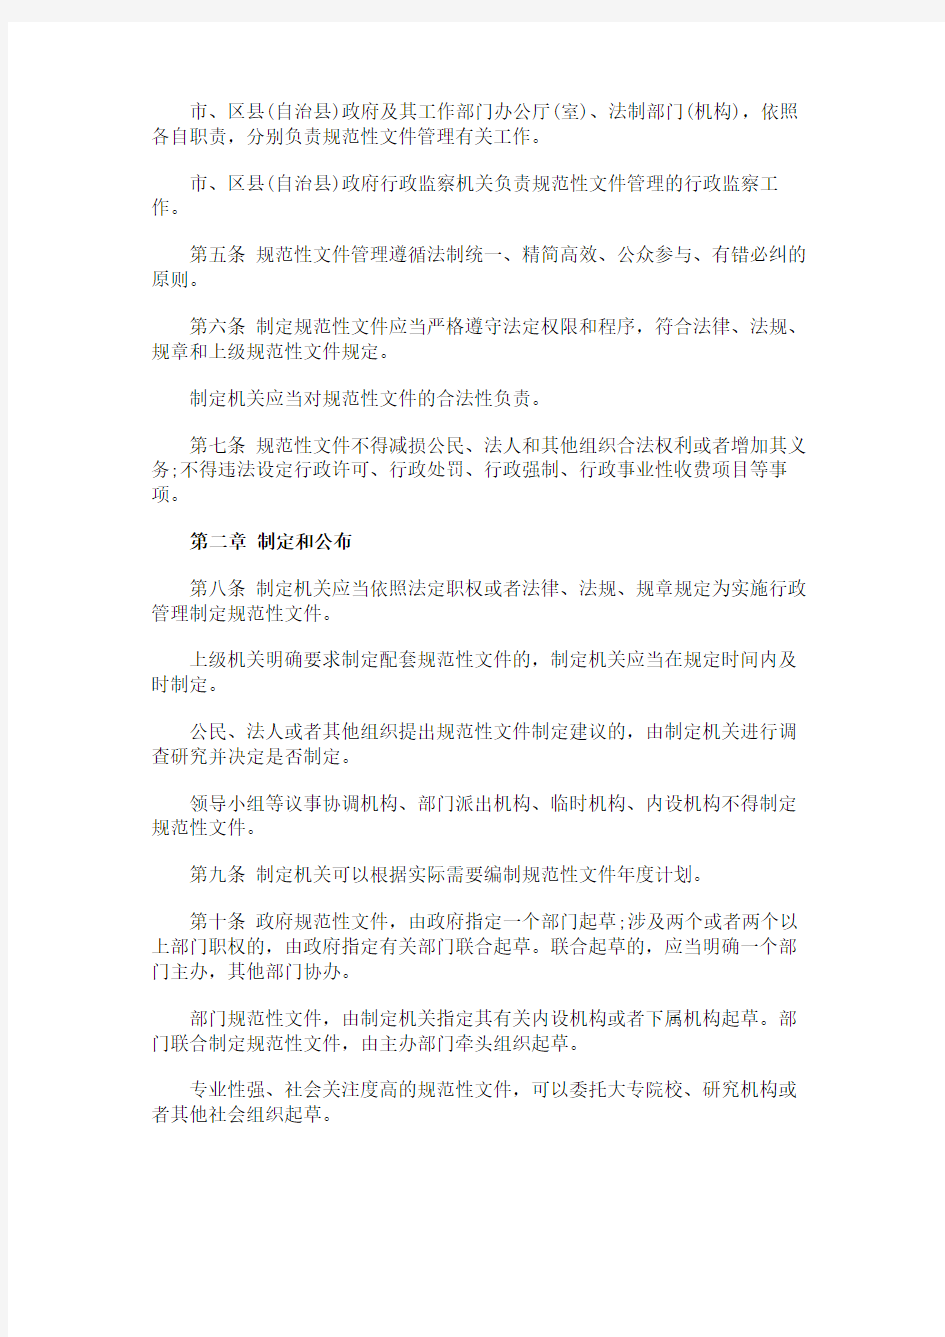 《重庆市行政规范性文件管理办法》